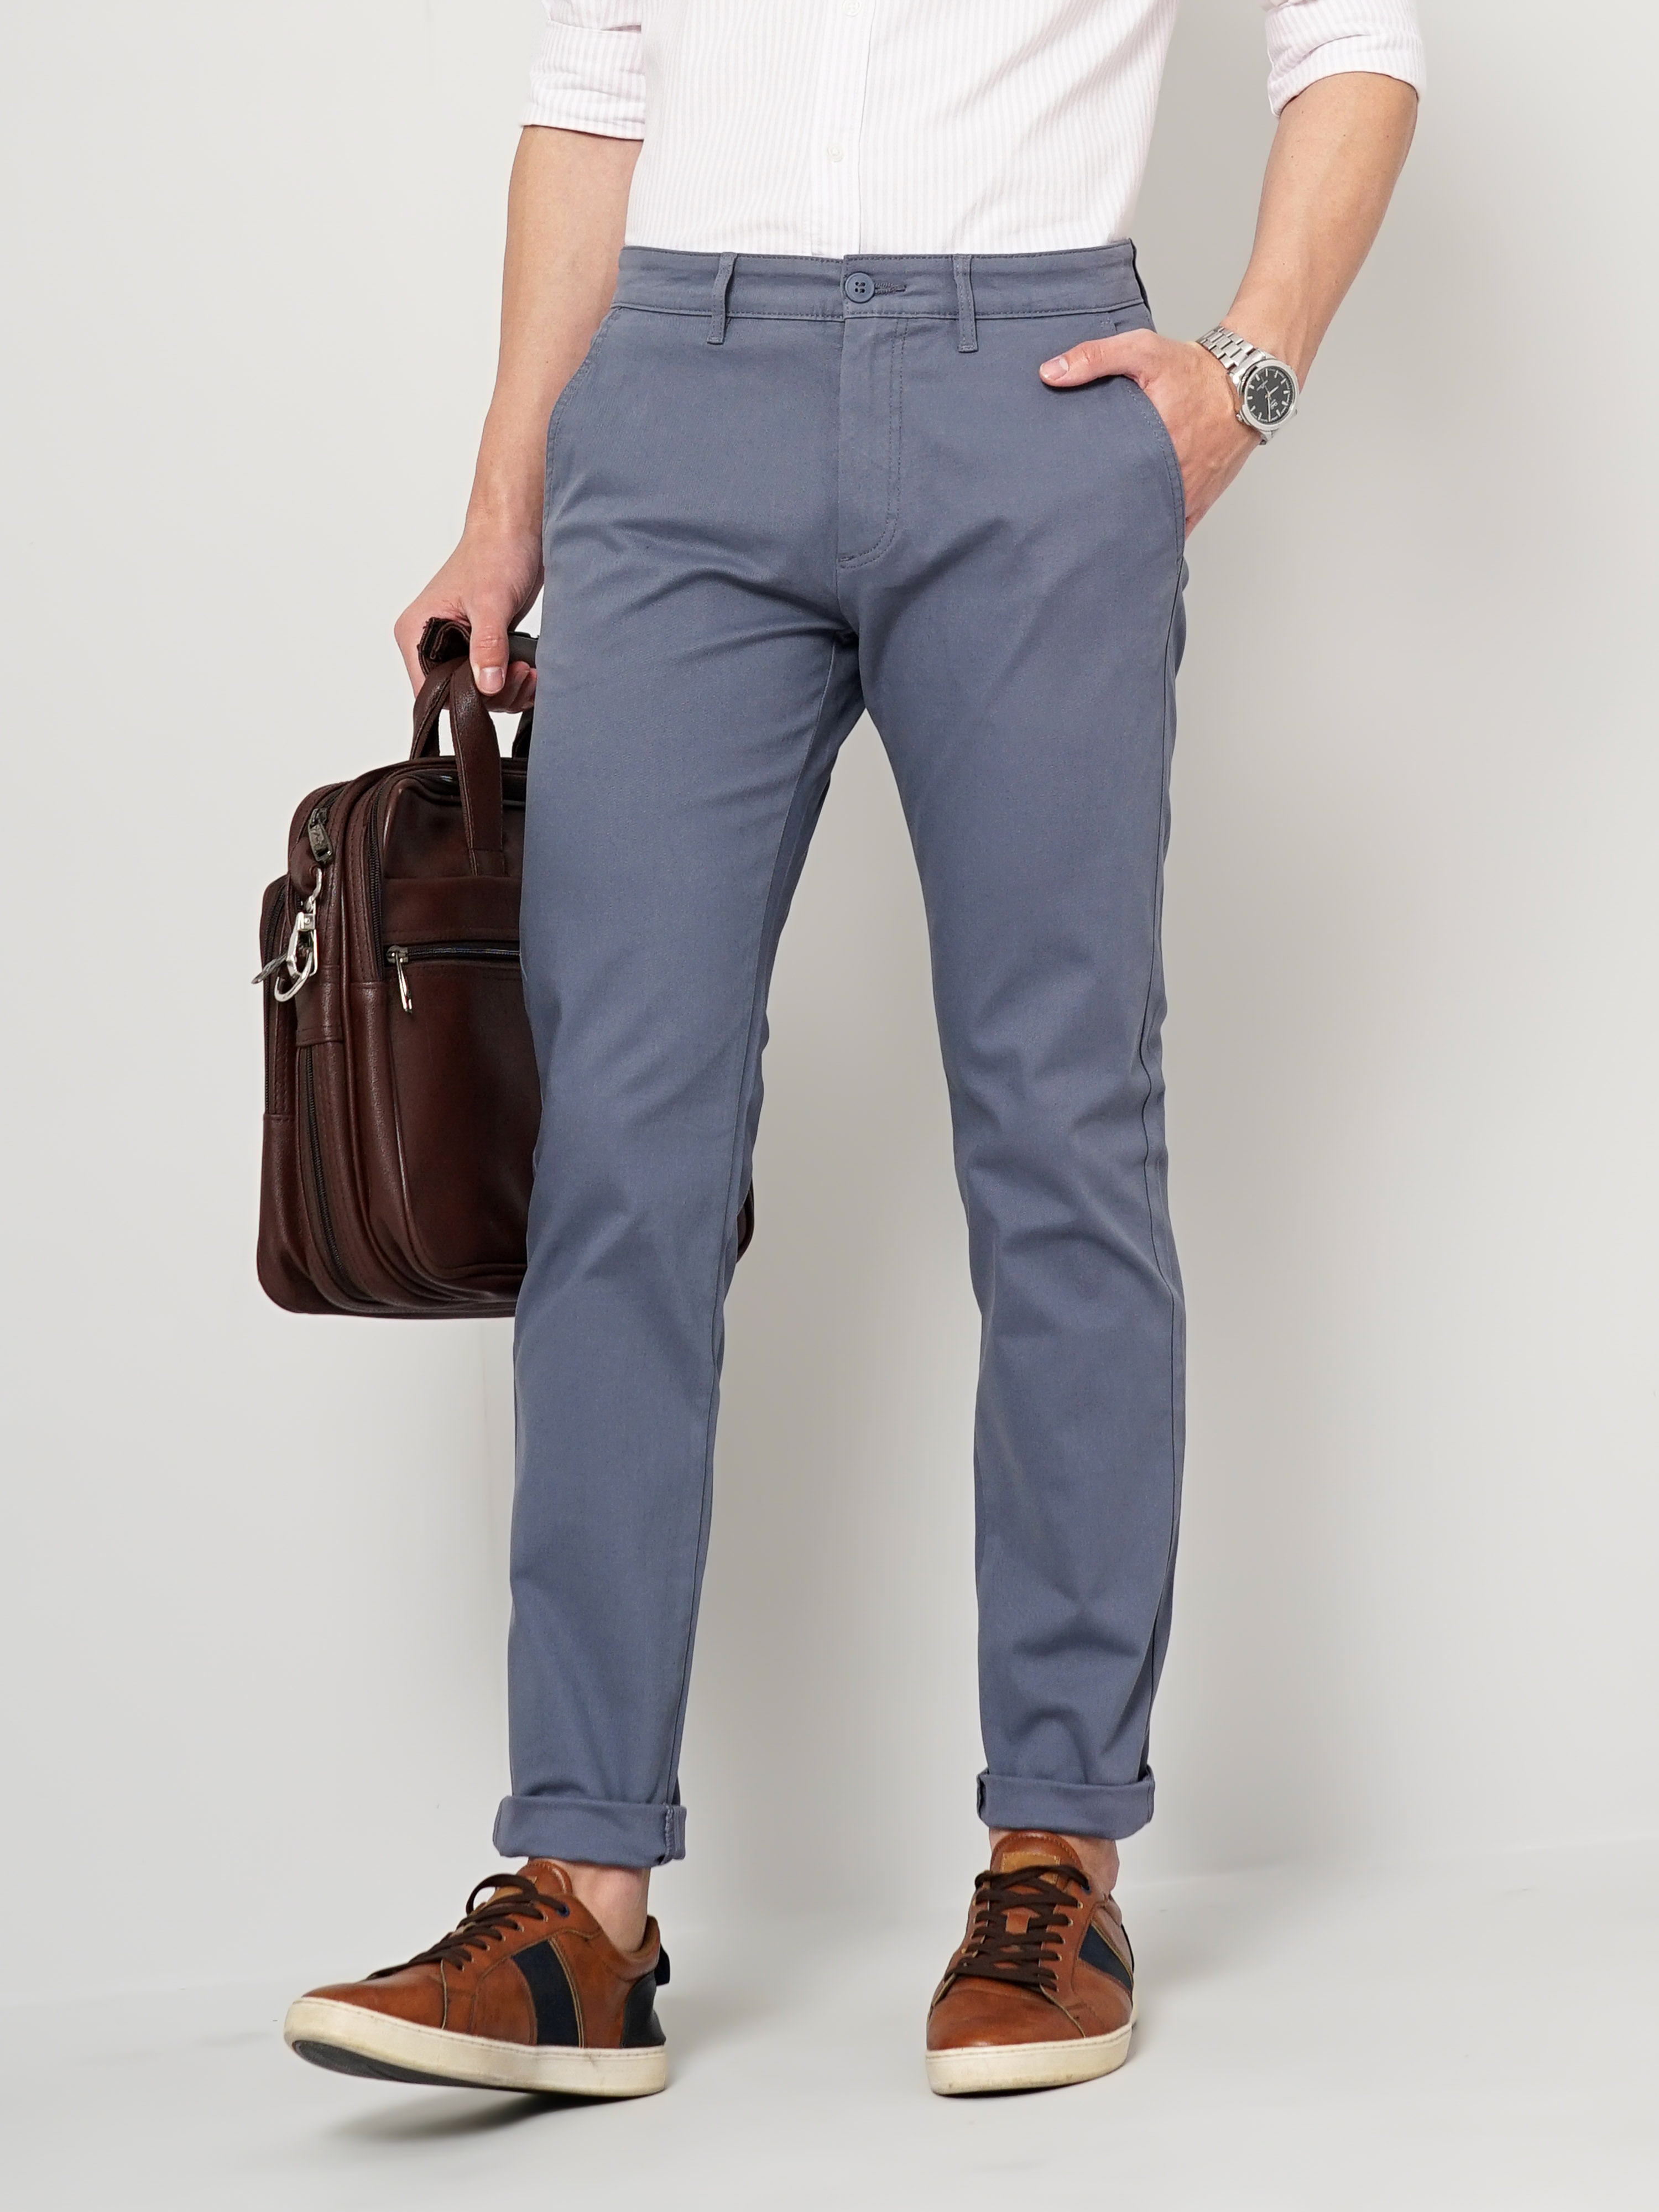 Men's Solid Grey Trouser